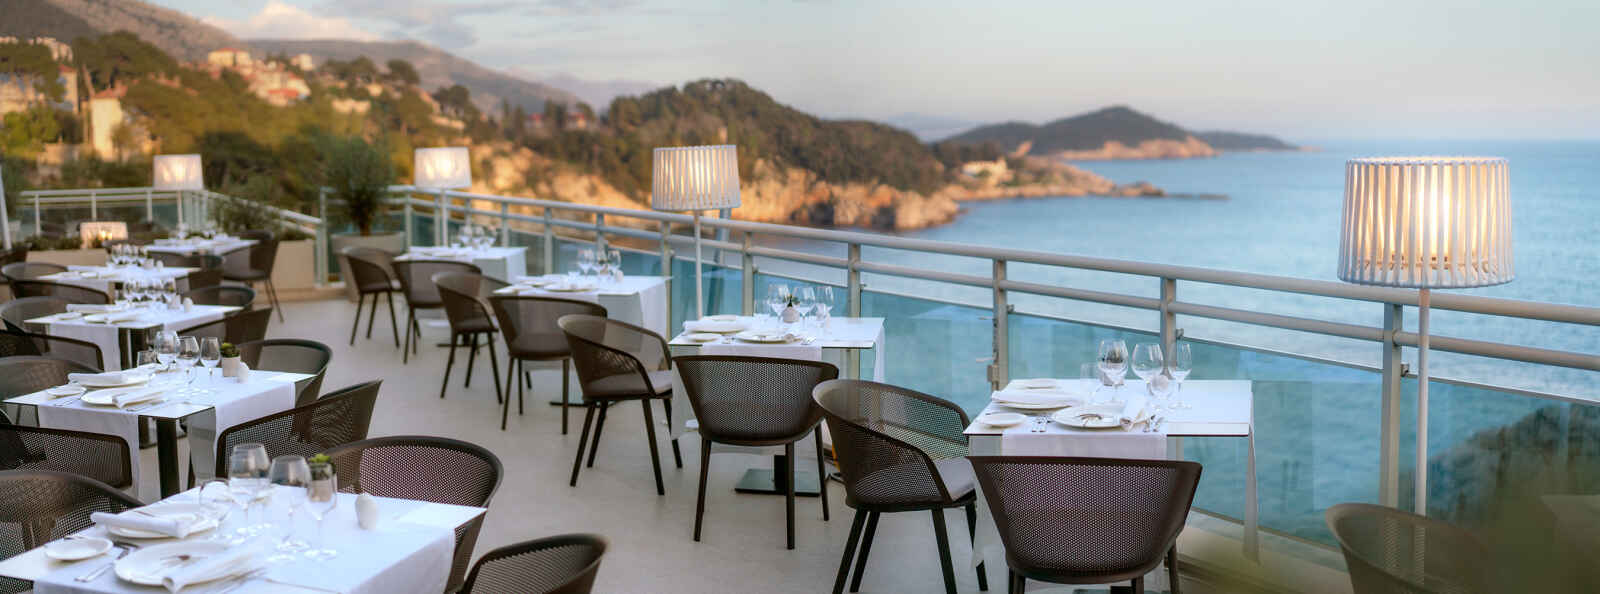 Croatie : Hotel Bellevue Dubrovnik